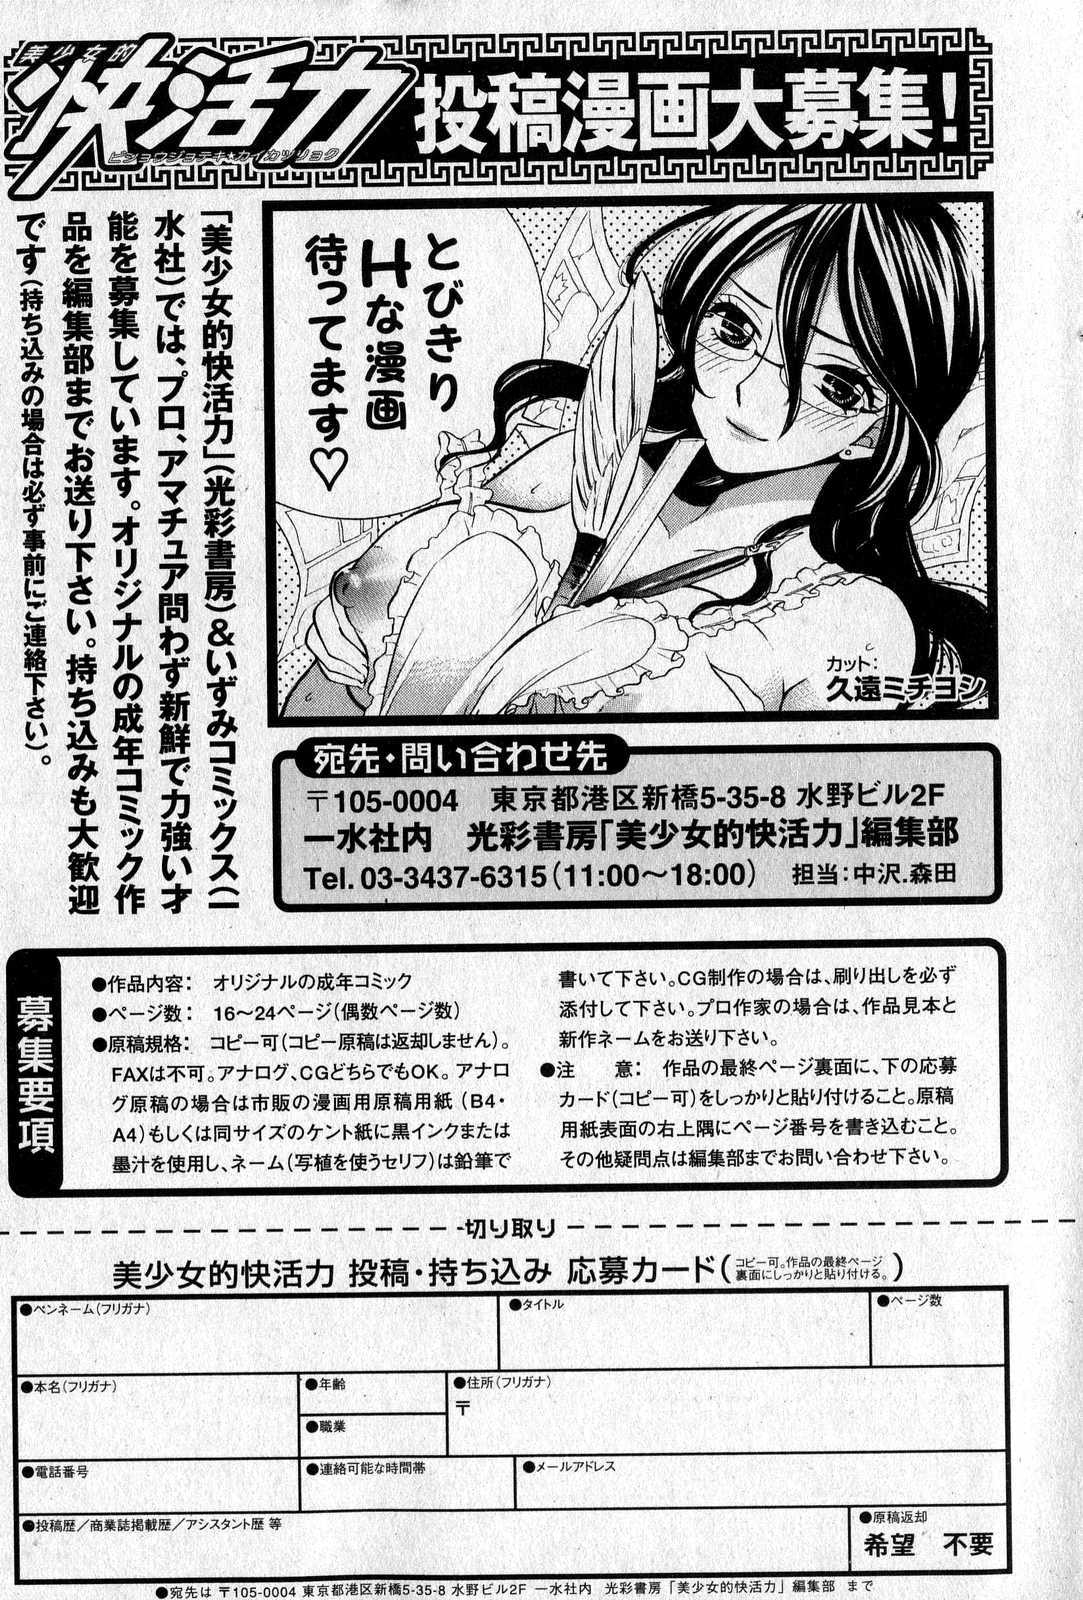 美少女的快活力 2007年08月号 Vol.16 [Anthology] Kaikatsu 0708 